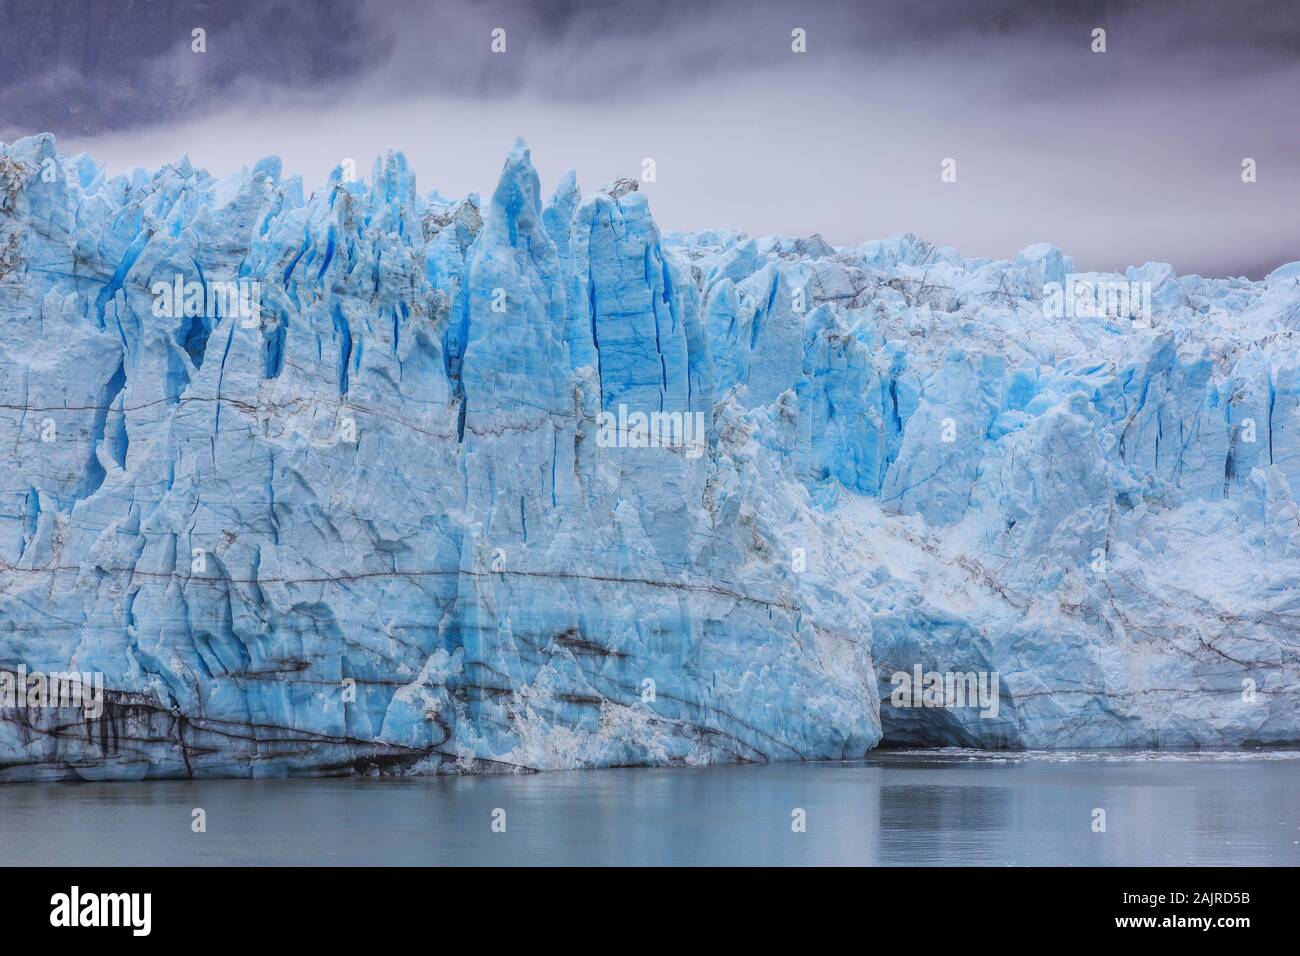 Alaska. Margerie glacier in the Glacier Bay National Park. Stock Photo